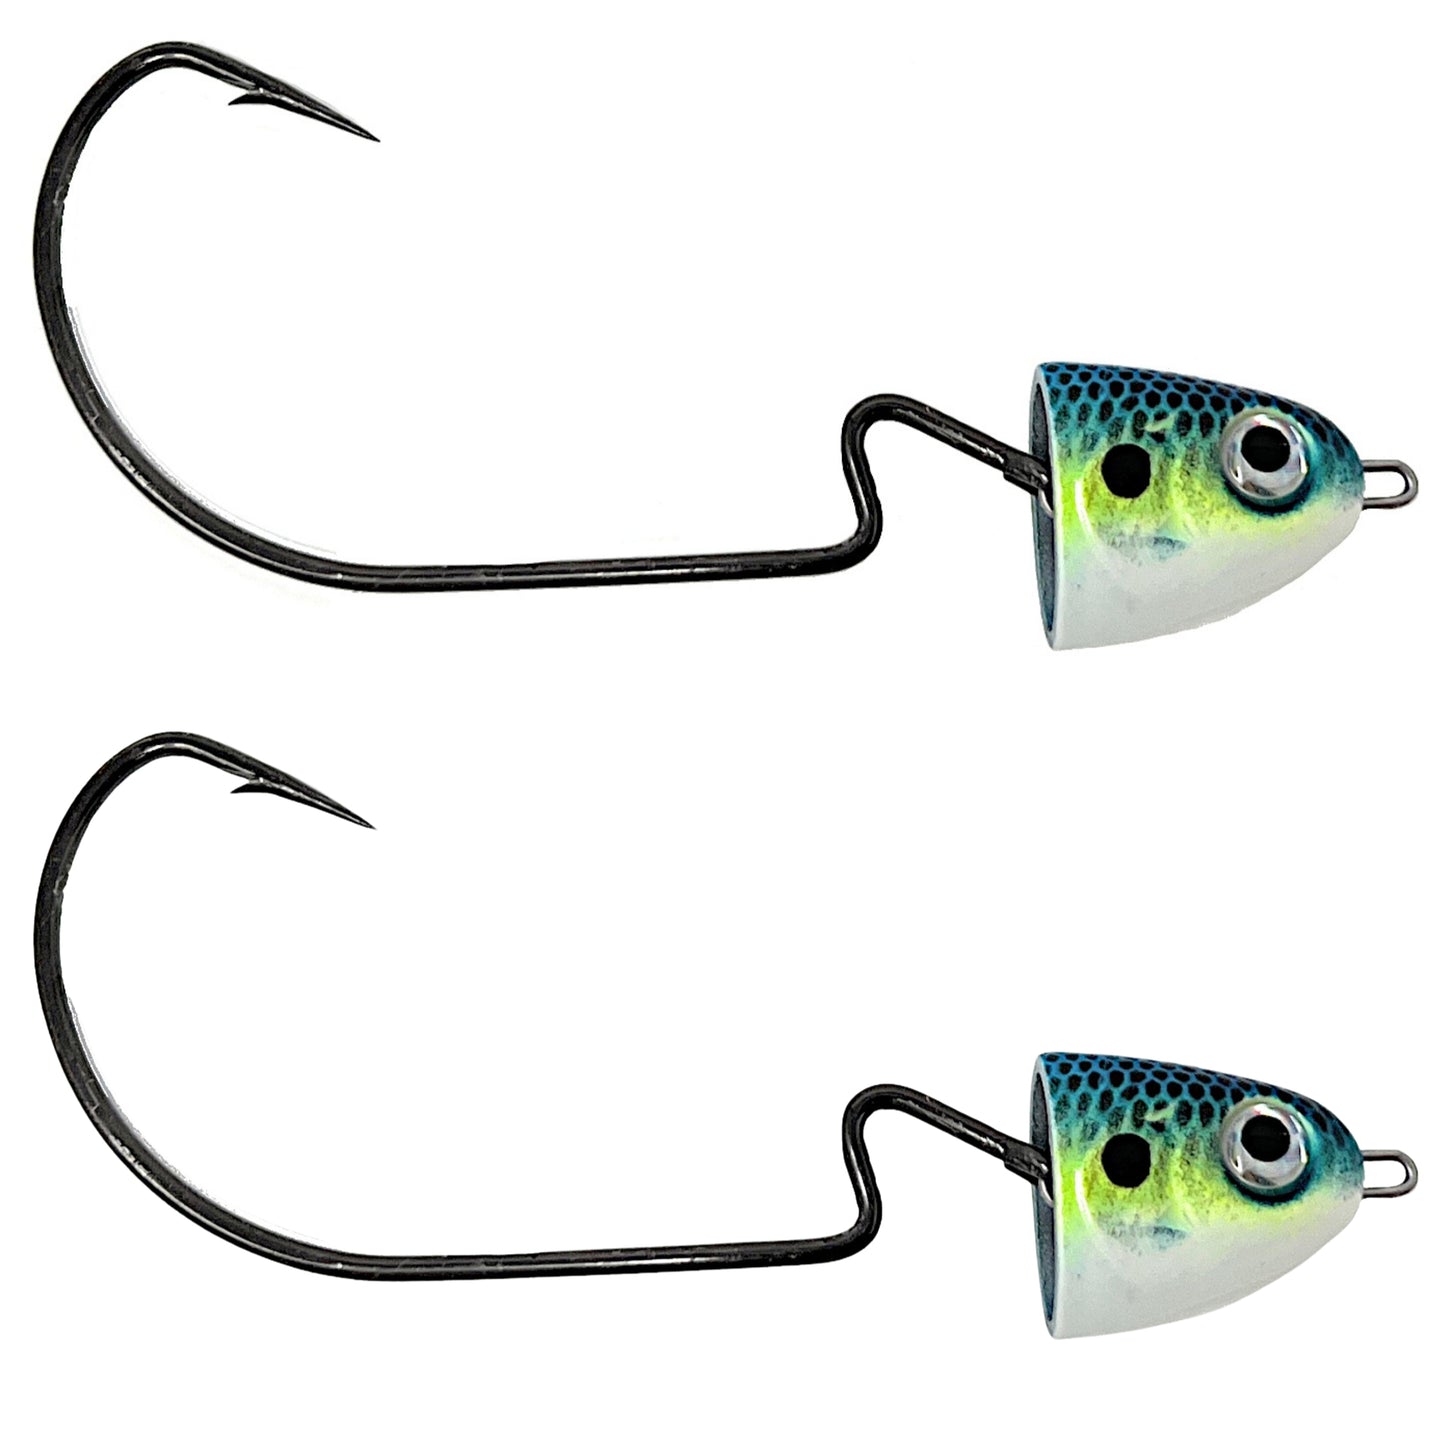 Predator Fish Swimbait Pack with hooks